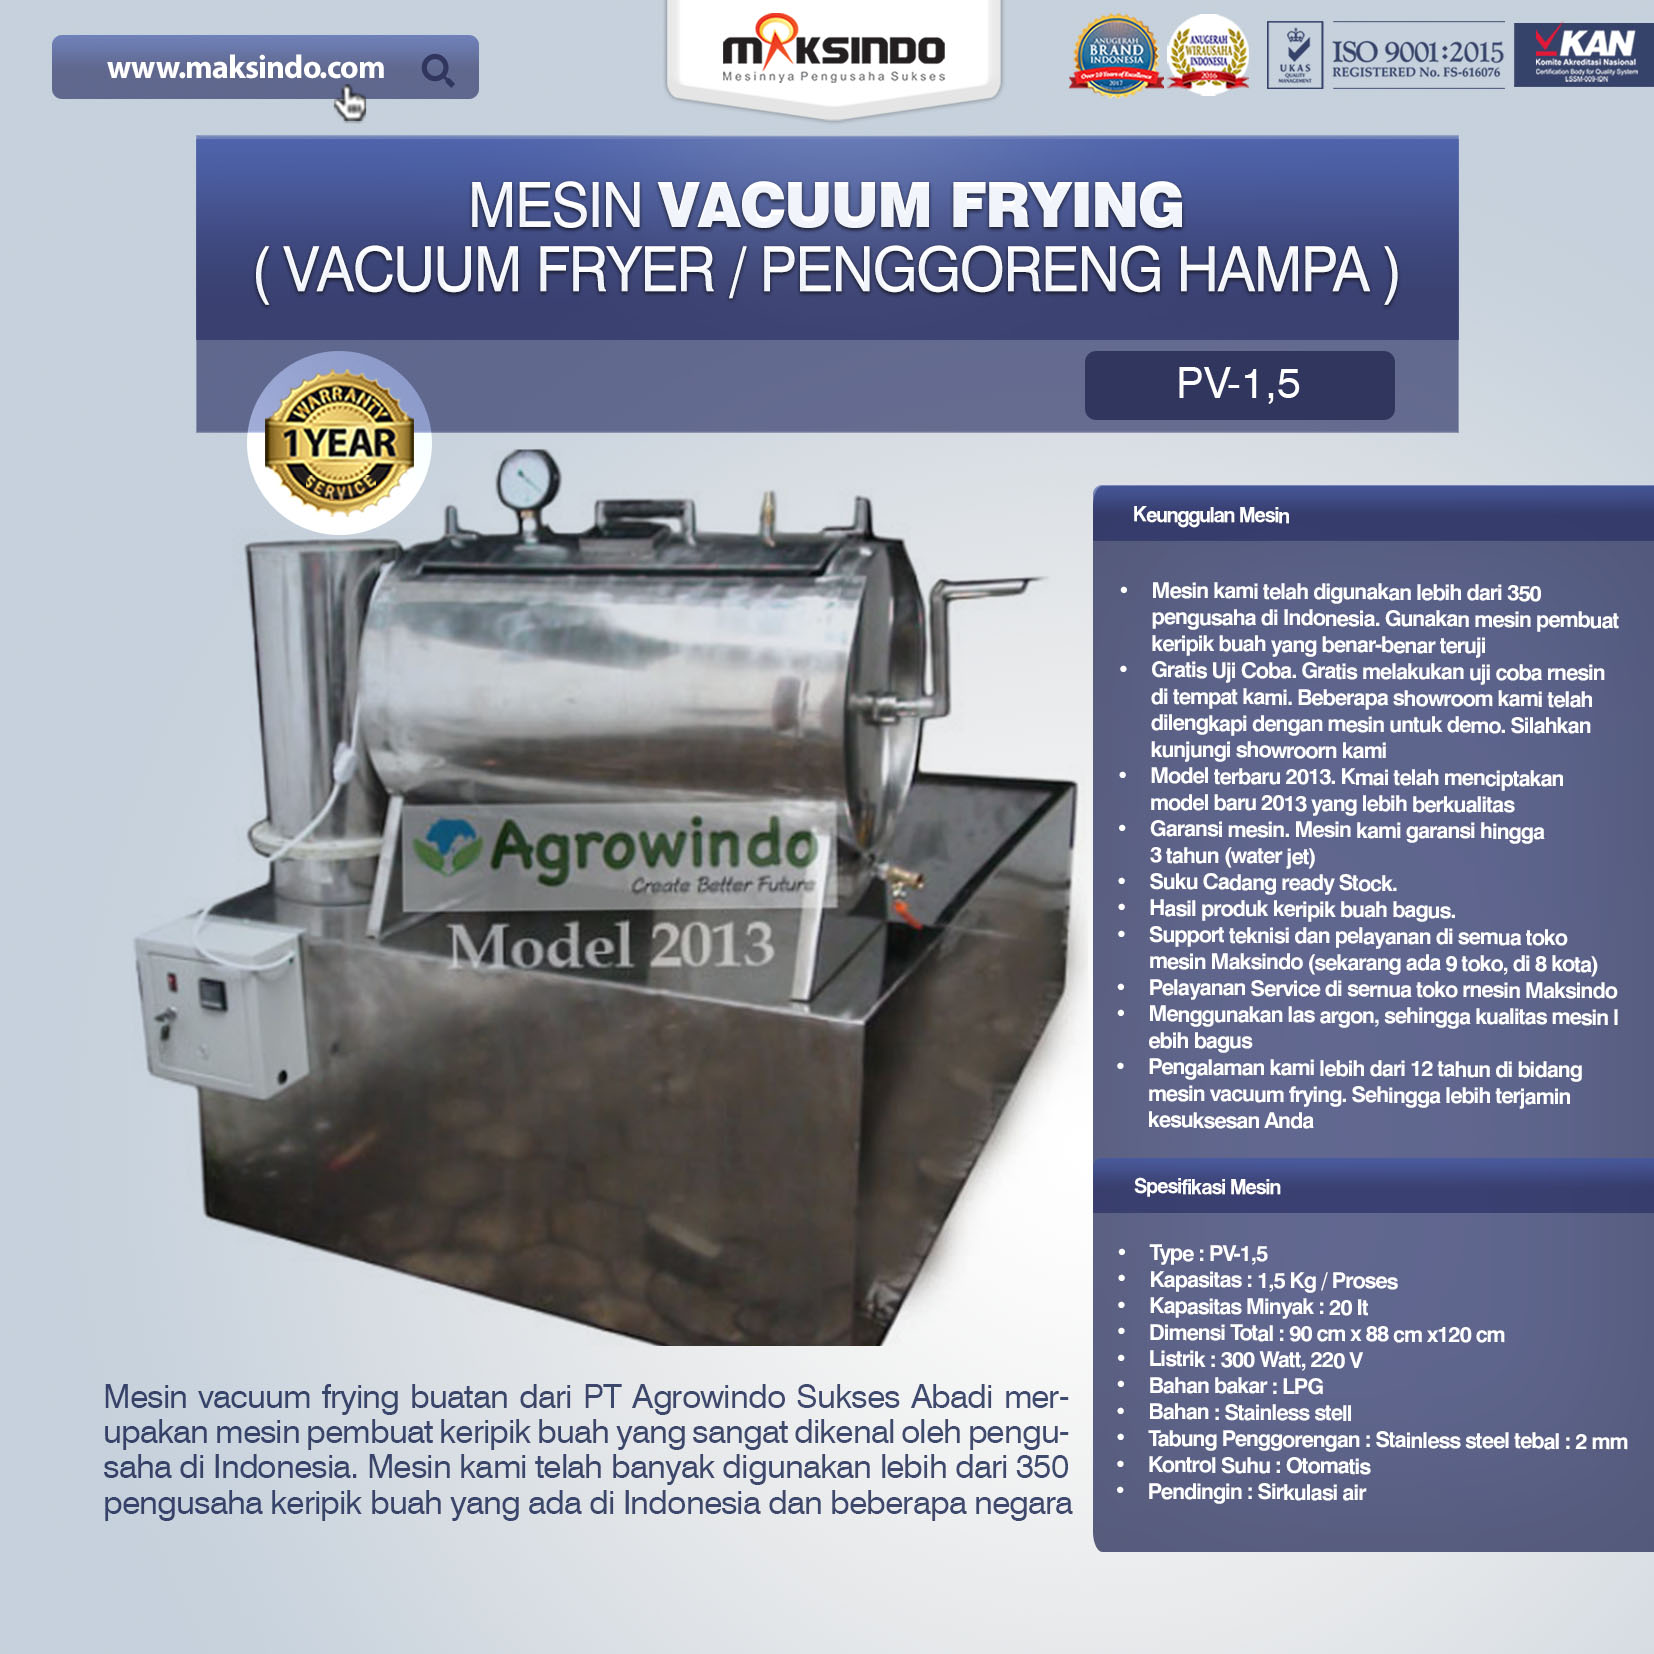 Jual Mesin Vacuum Frying Kapasitas 1.5 kg di Semarang